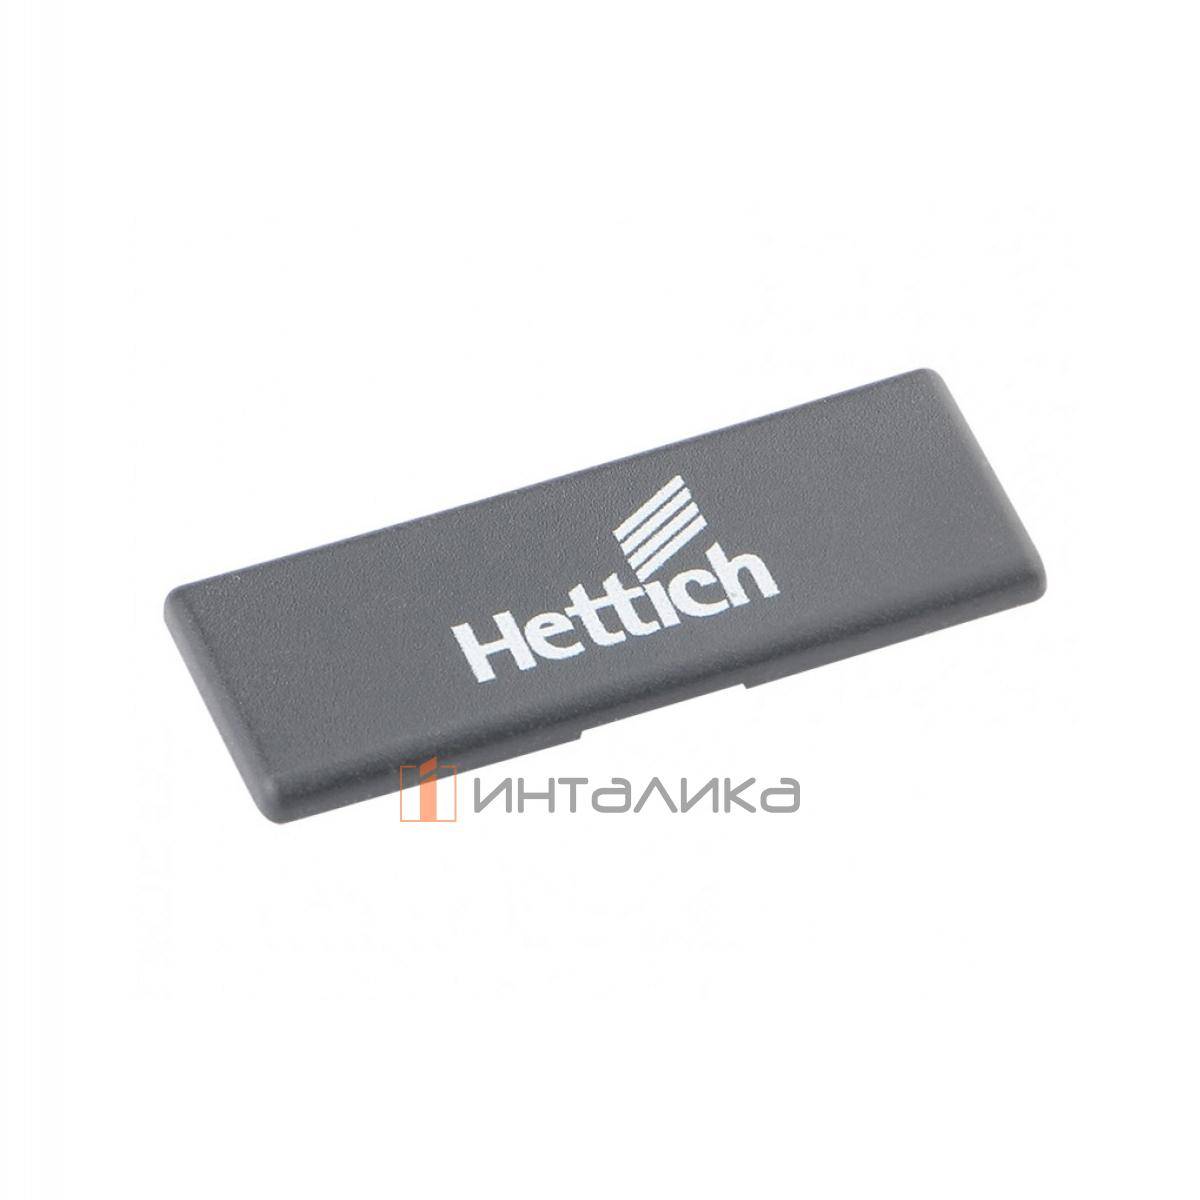 Заглушка HETTICH для плеча петли Sensys 8657I 165°, с логотипом Hettich, (V50), пластик